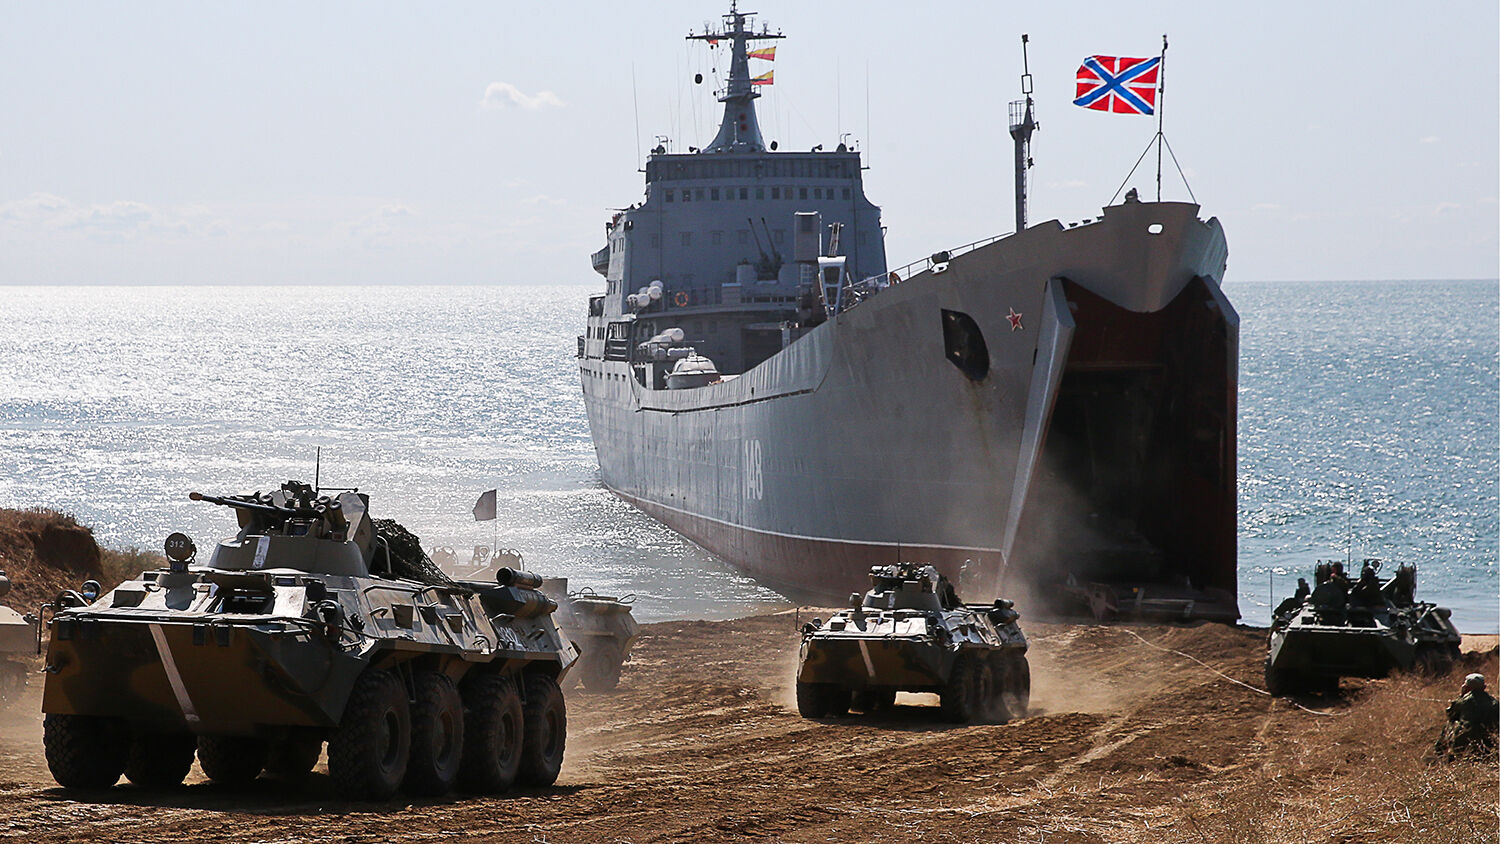 военный корабль орск россии в черном море